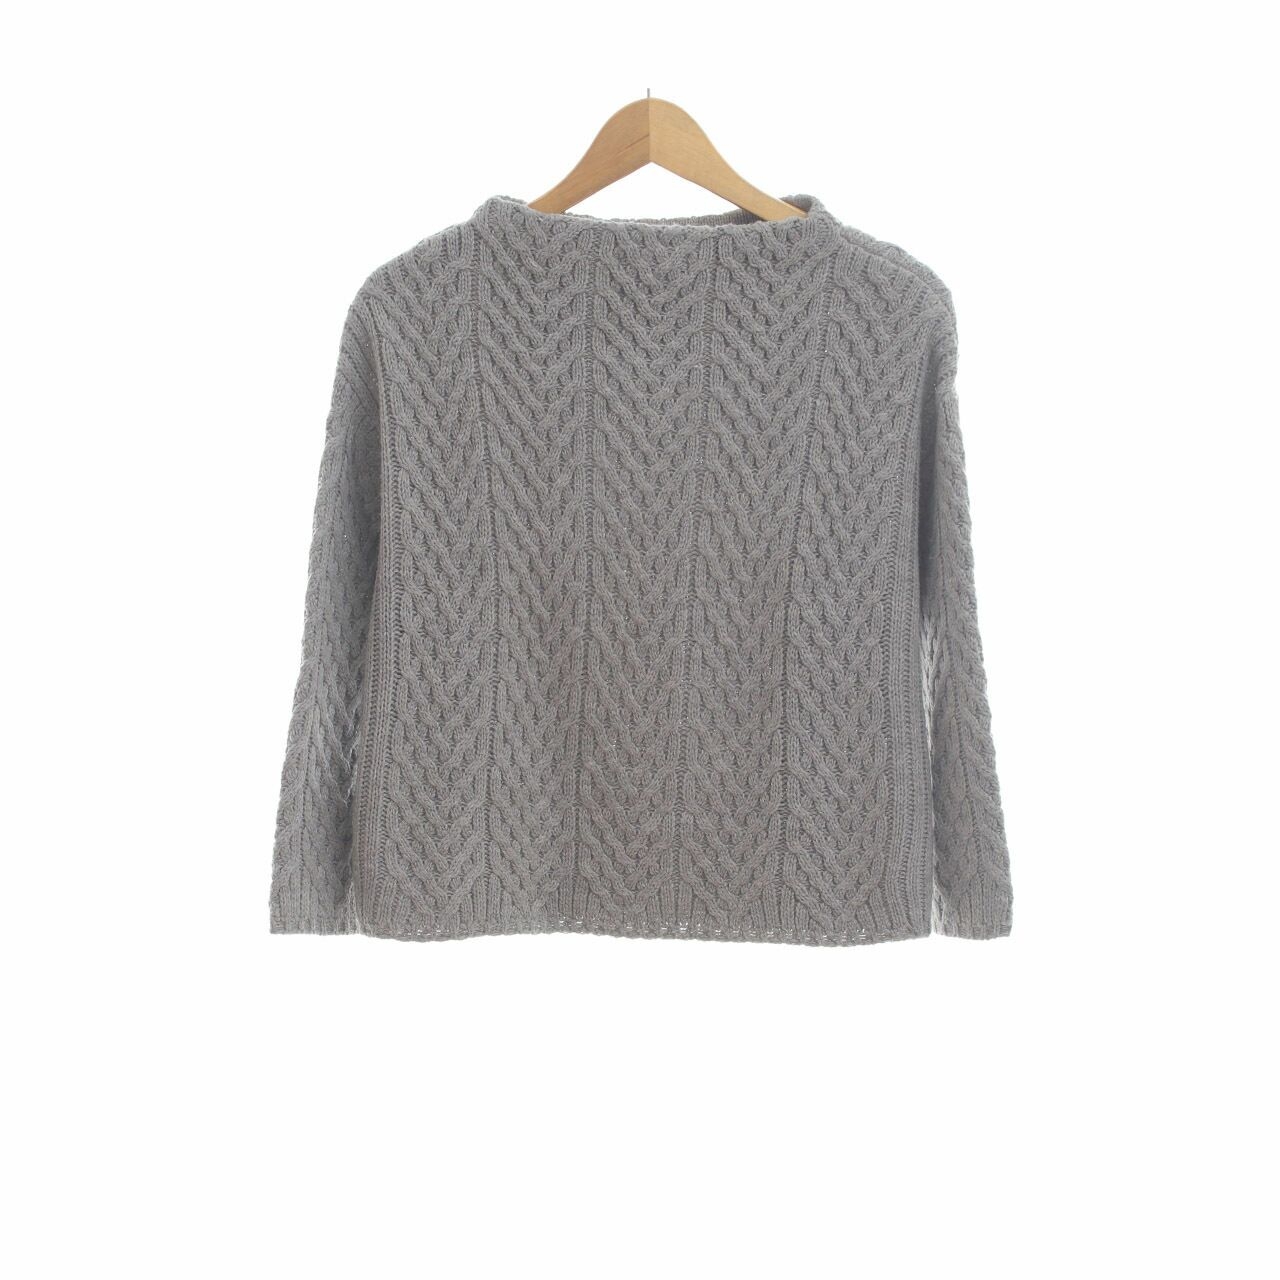 Zara Grey Knit Sweater